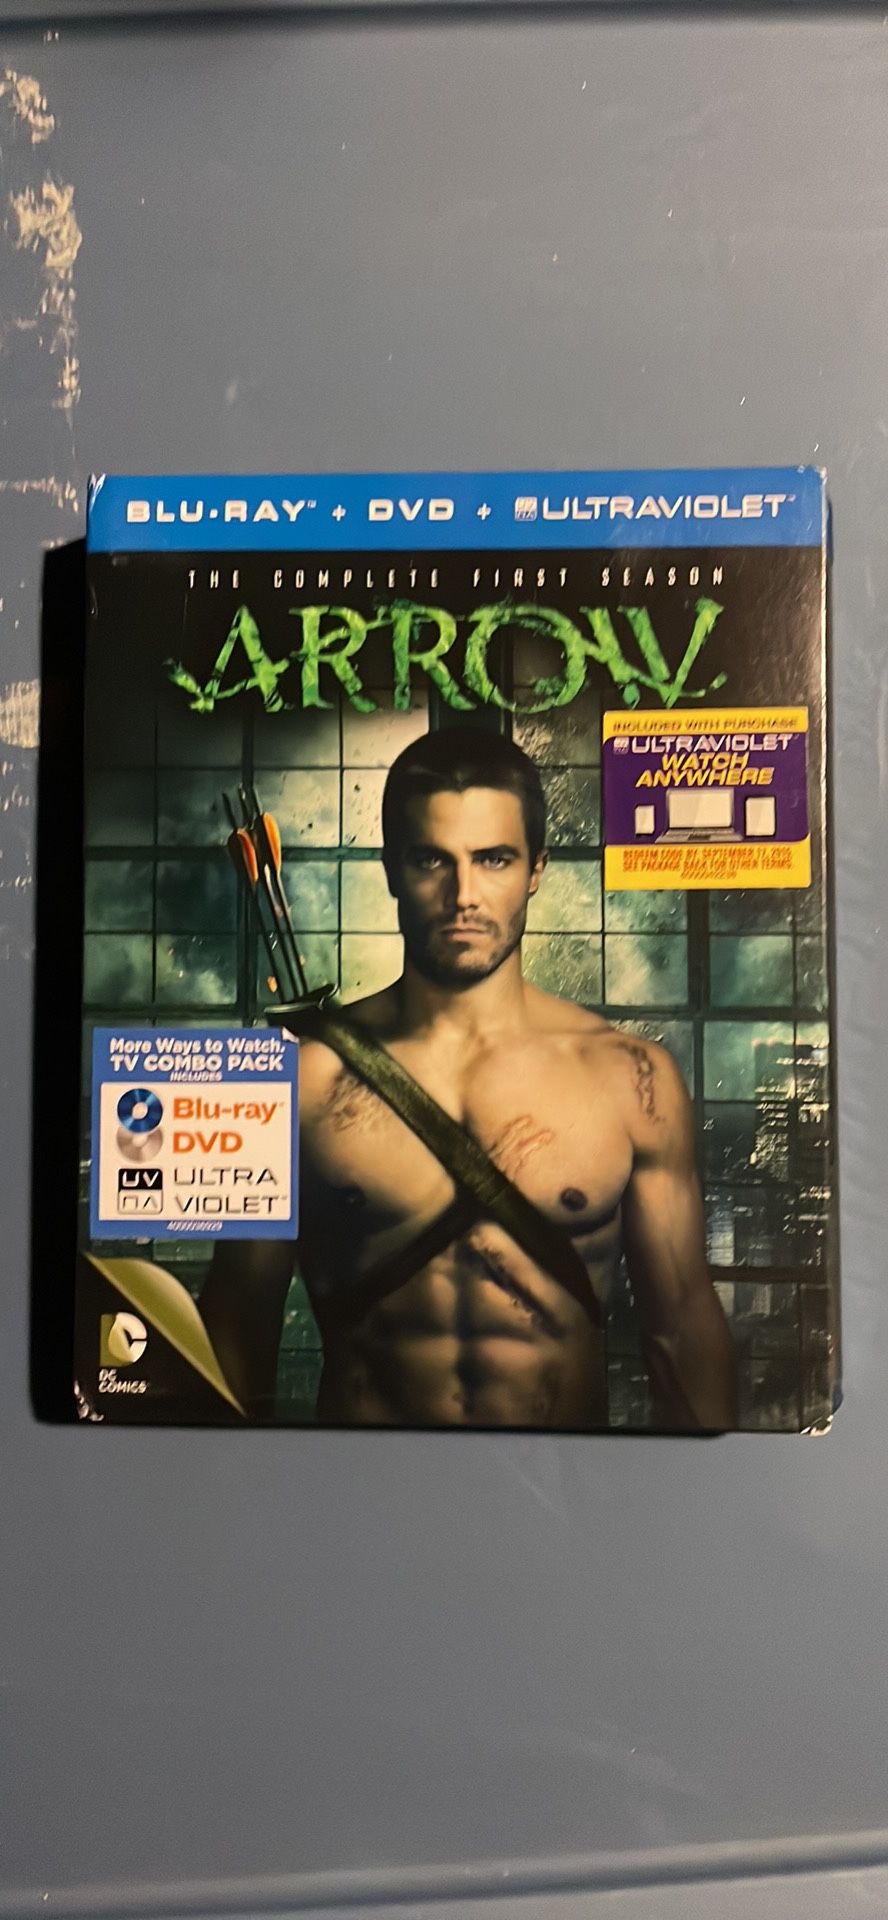 Arrow Season 1 